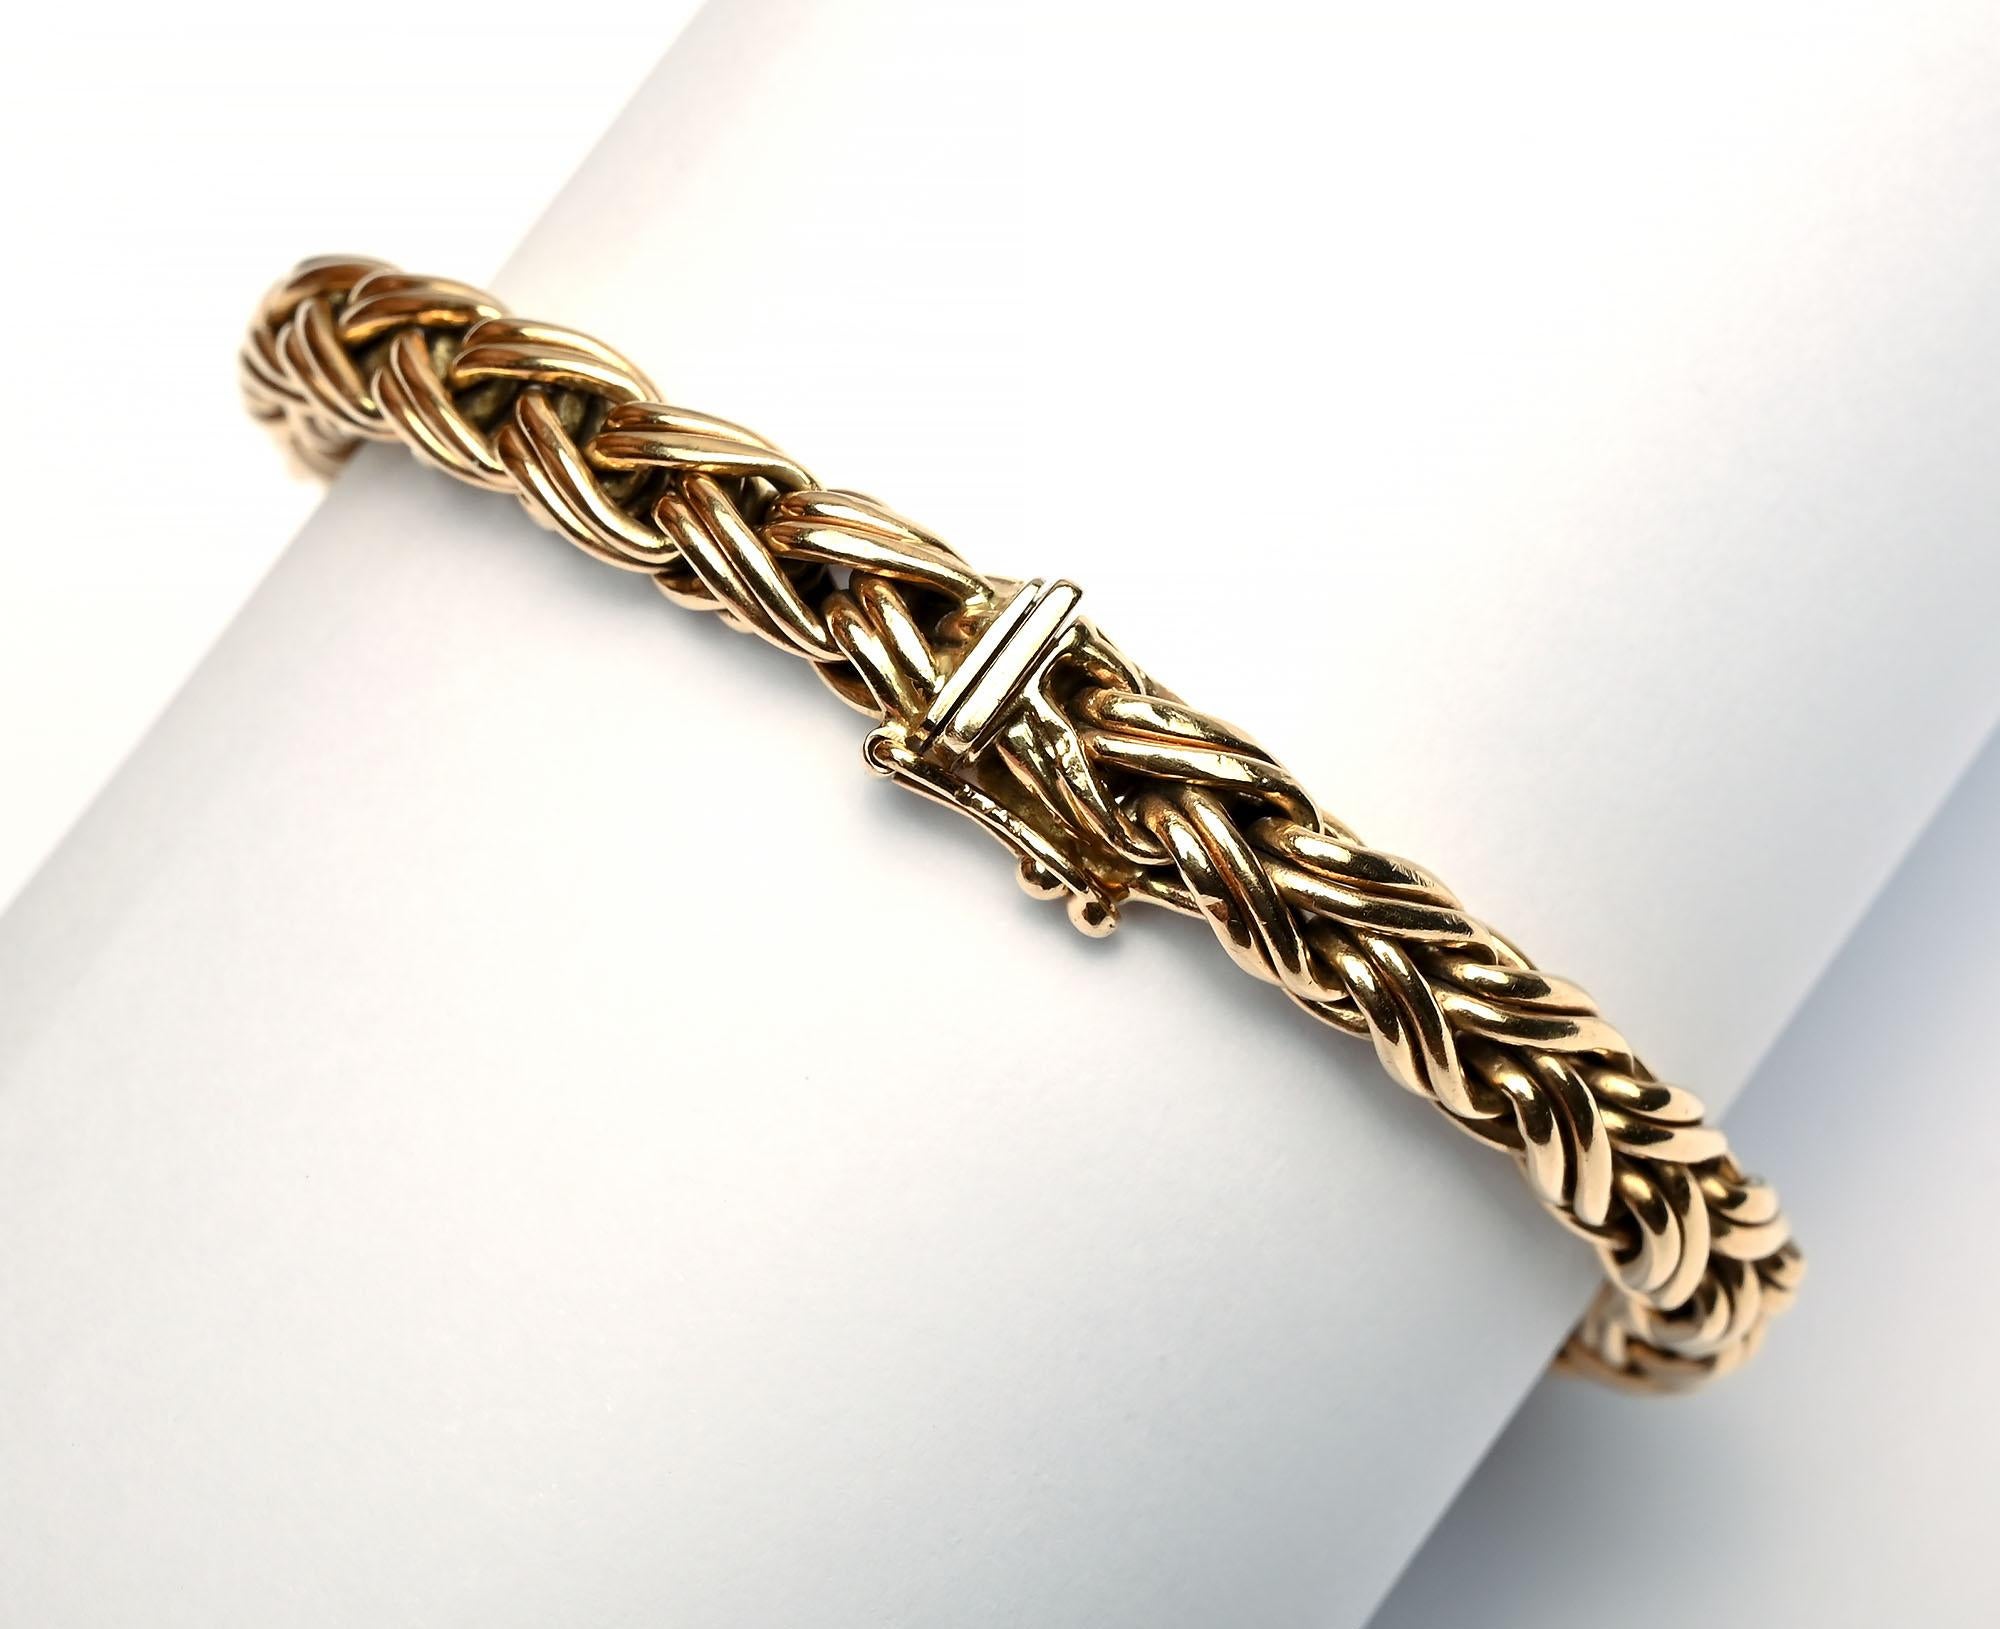 Bracelet classique en chaîne à chevrons de Tiffany qui peut être porté seul ou en groupe. Le bracelet est large d'un quart de pouce et long d'un peu moins de 7 pouces et demi. Il est doté d'un fermoir à poussoir et d'une sécurité. Le bracelet est en